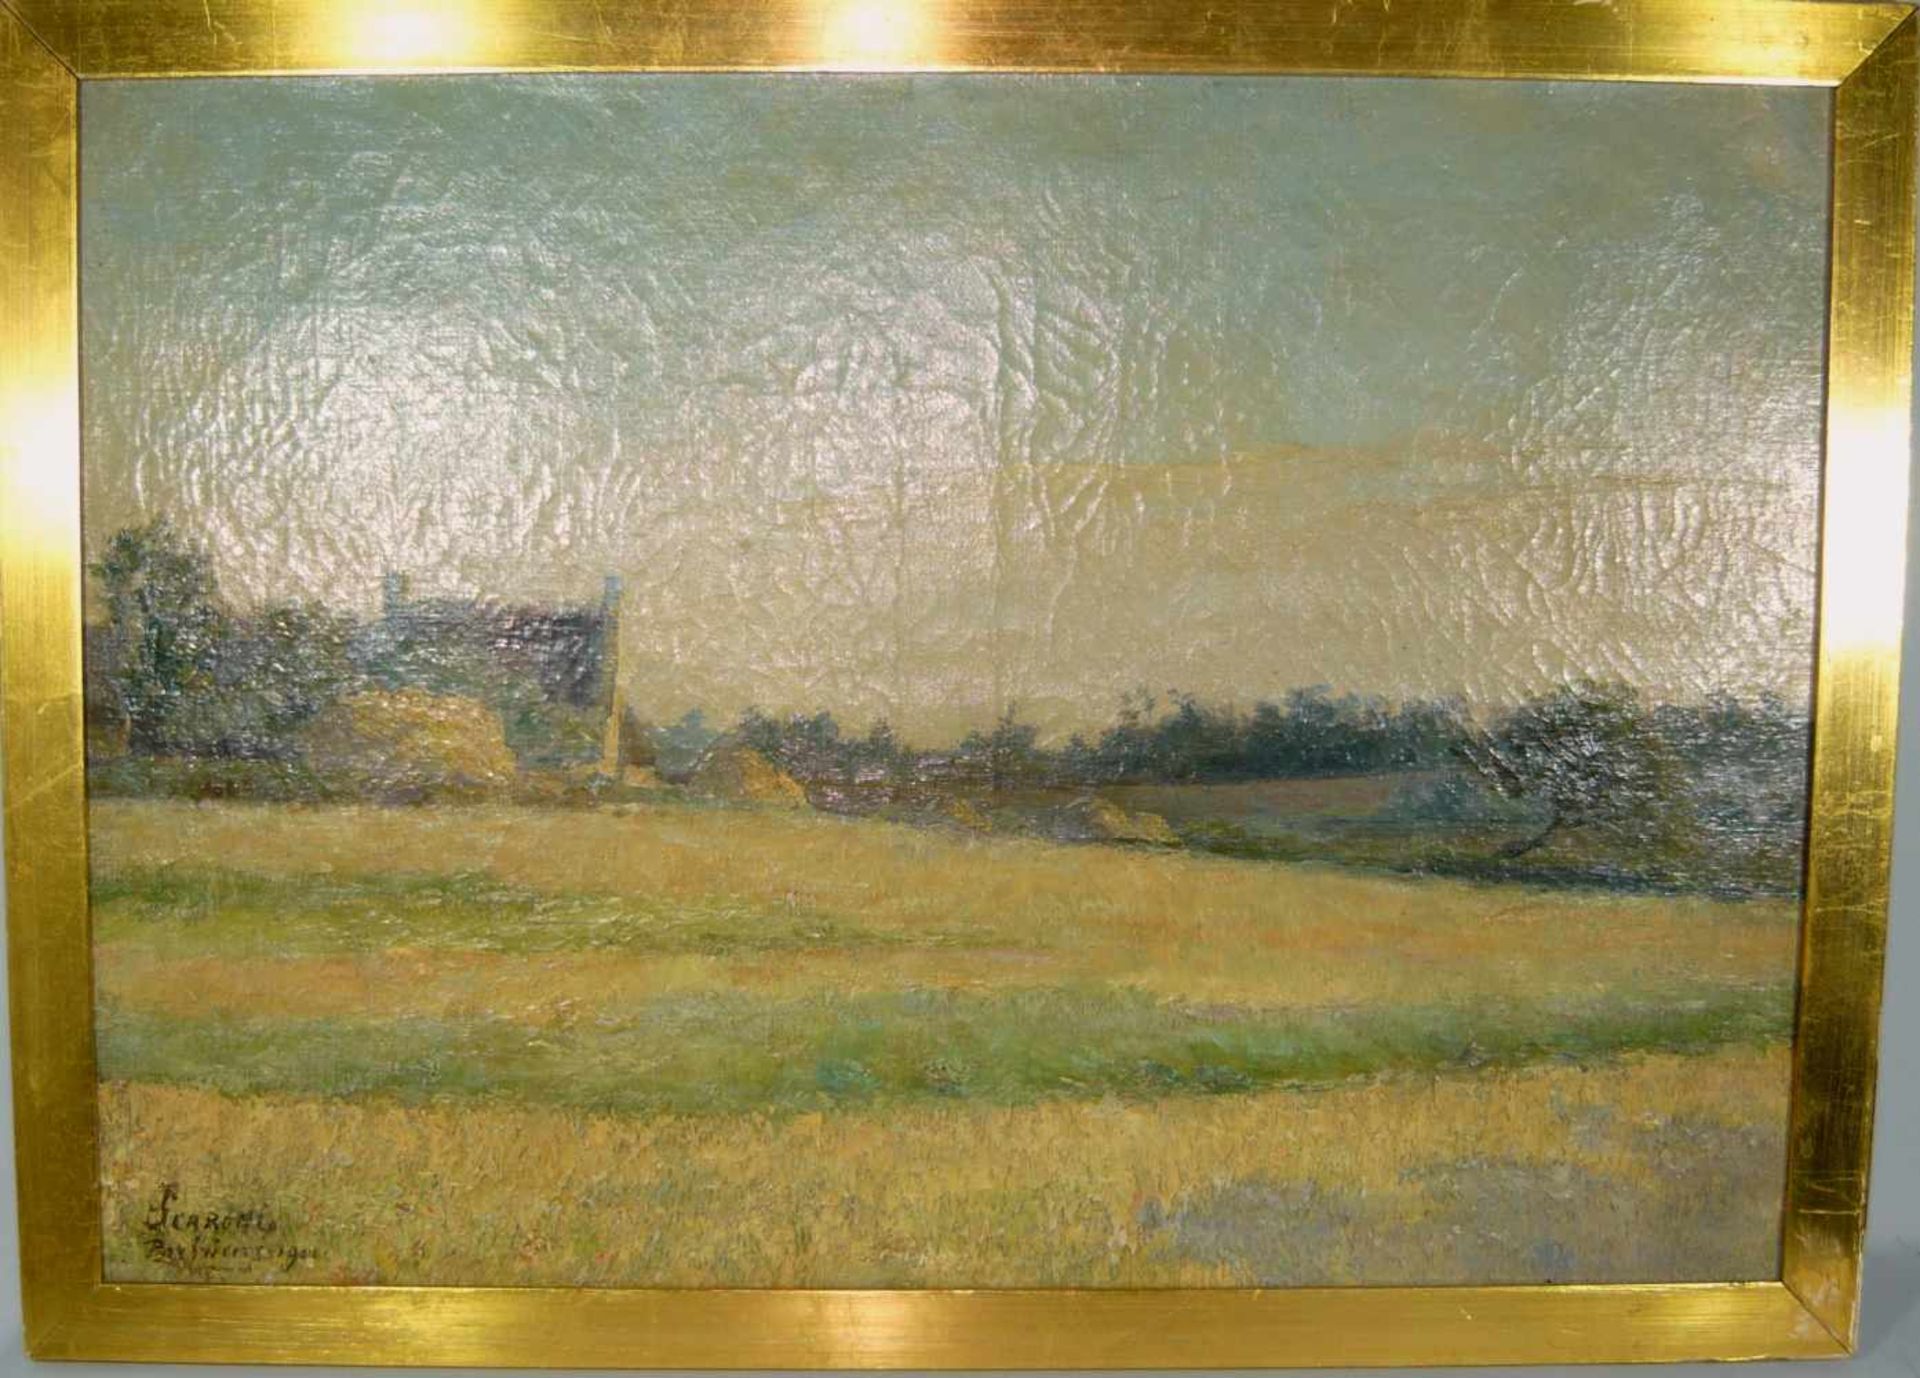 Scaroni u. andere. Paar Gemälde von sommerlichen Landschaften mit Heugarben. Öl/LW. Sign. u. li.